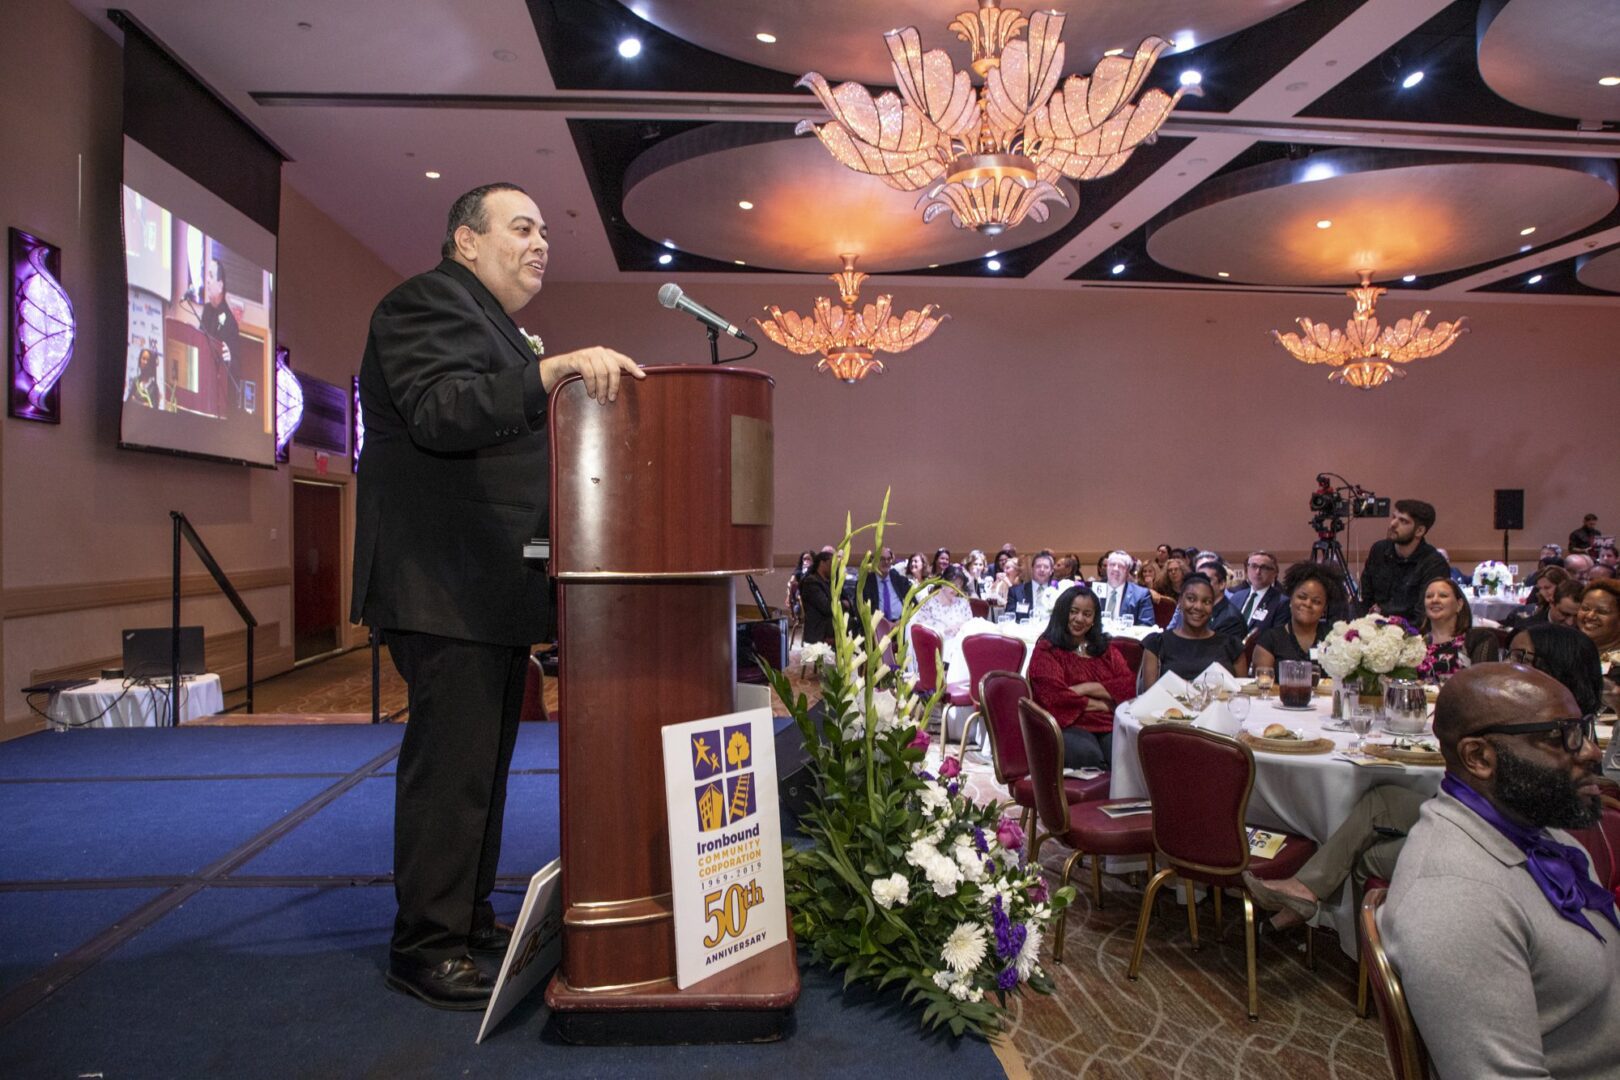 A man giving a speech at a banquet.